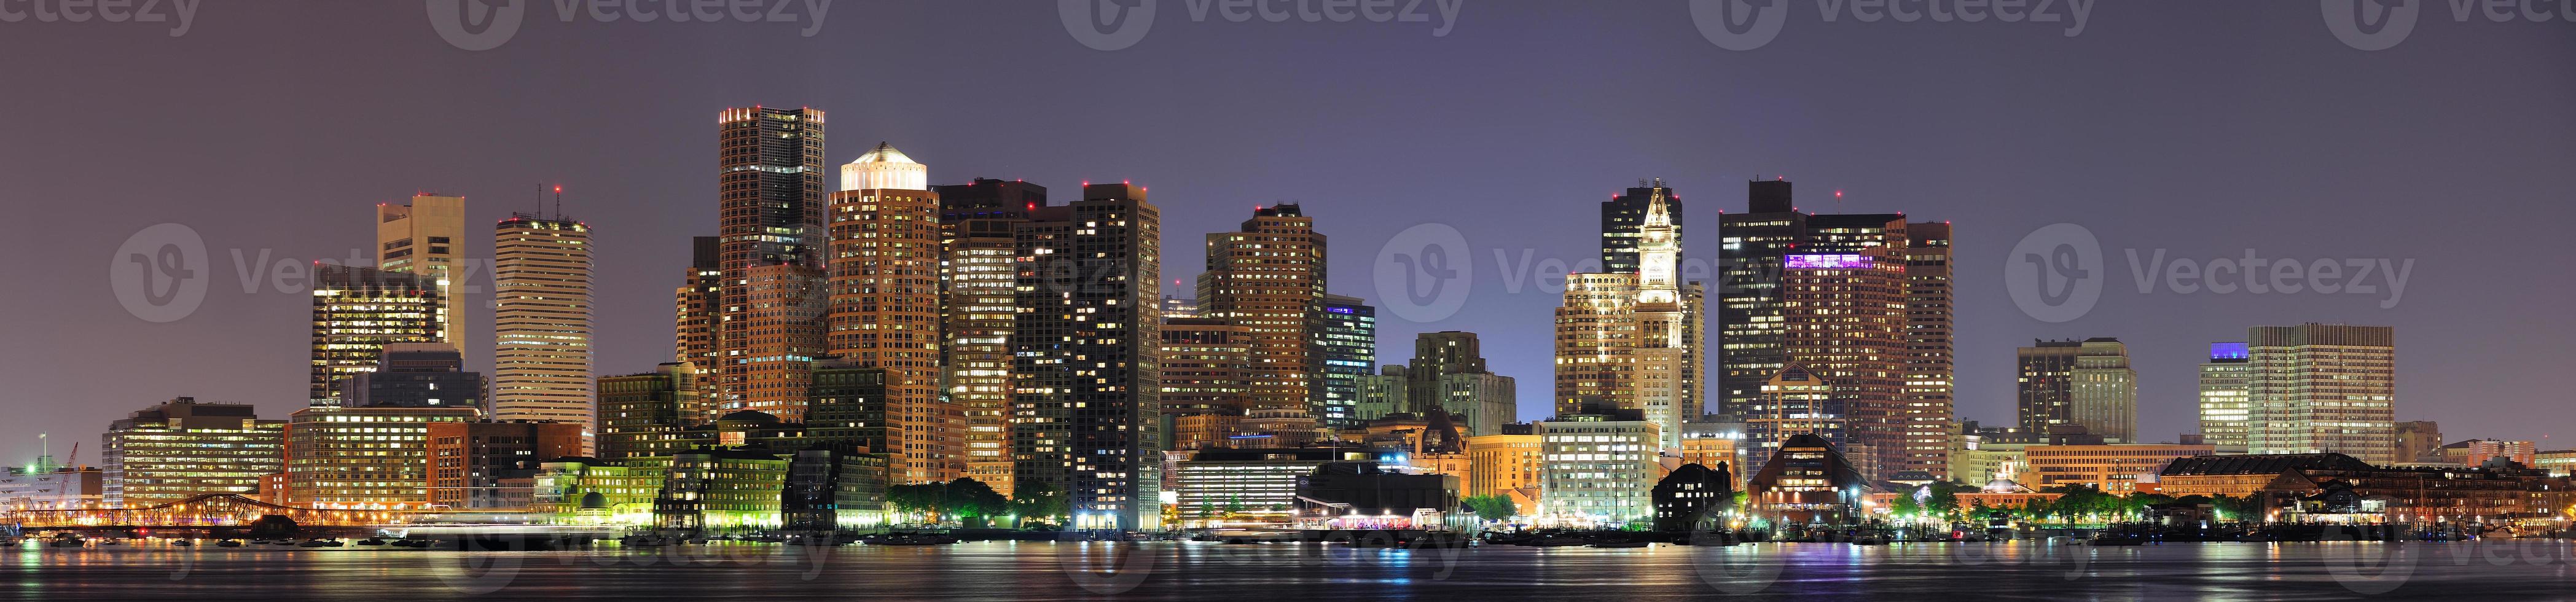 vista de boston, massachusetts foto